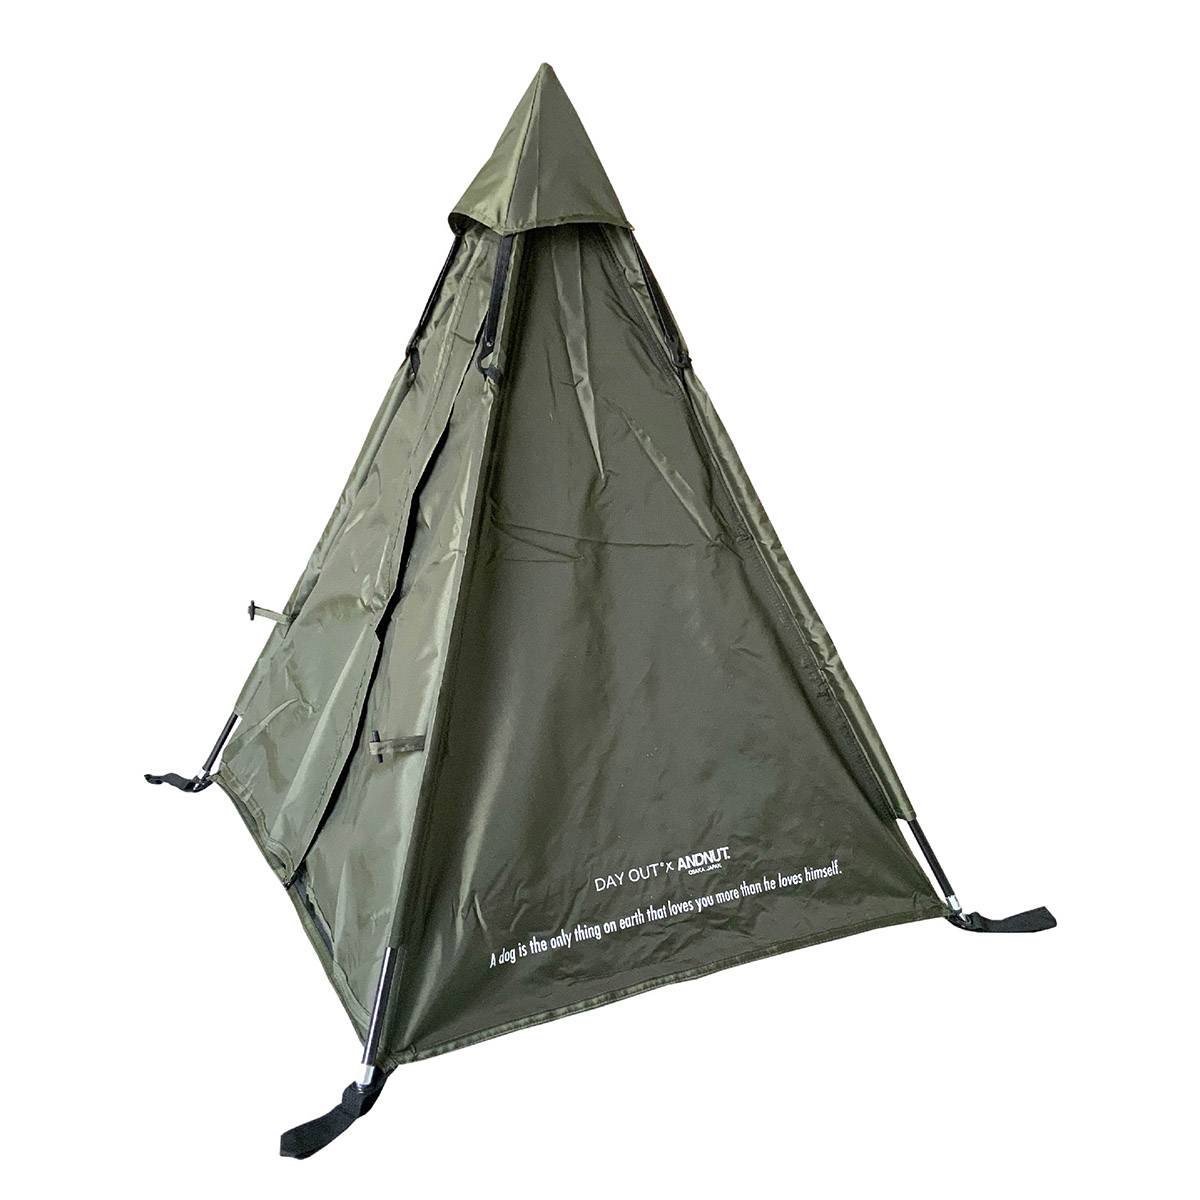 ティピーテント 犬用テント キャンプ アウトドア 耐水 組み立て簡単 軽量 ペグダウン 猫用テント ベンチレーション付き ペットテント 650